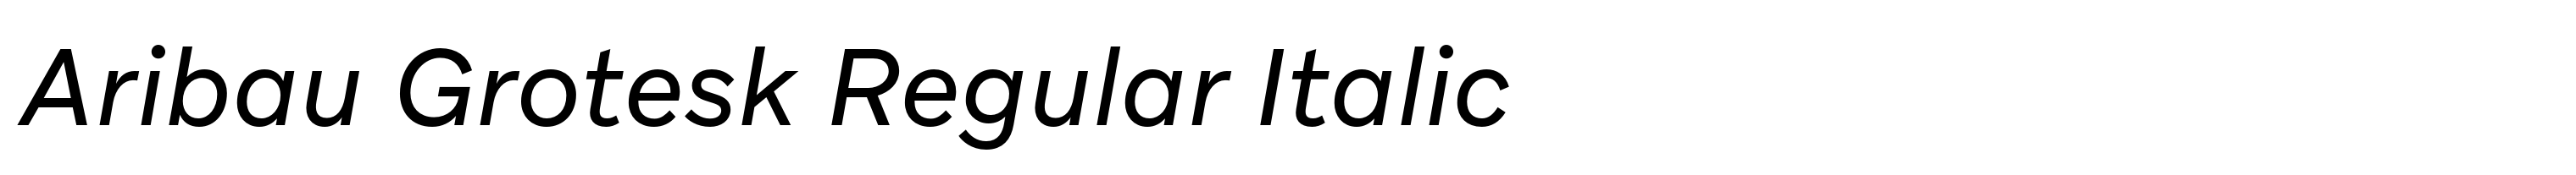 Aribau Grotesk Regular Italic